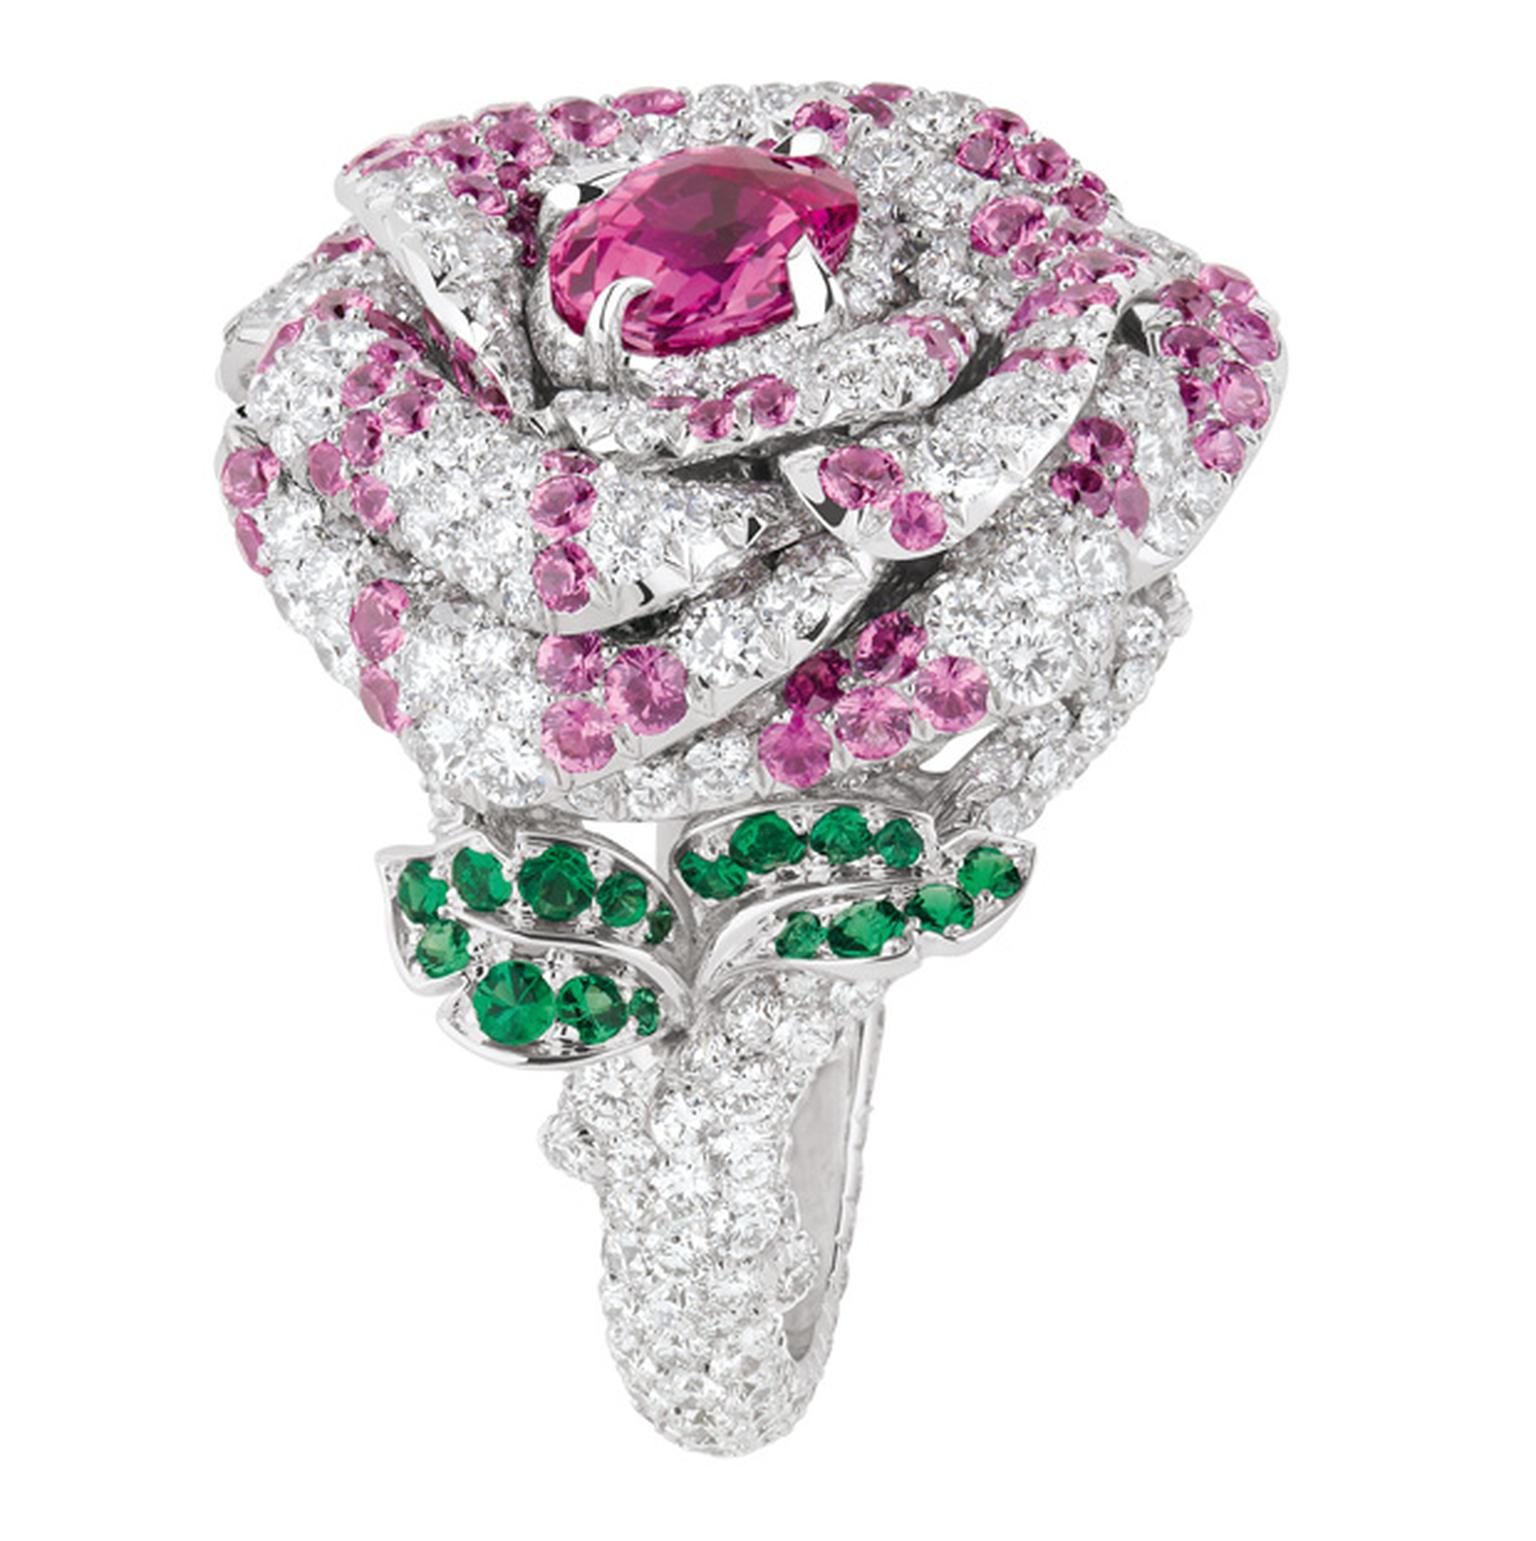 Dior  Precieuses Rose ring by Victoire de Castellane